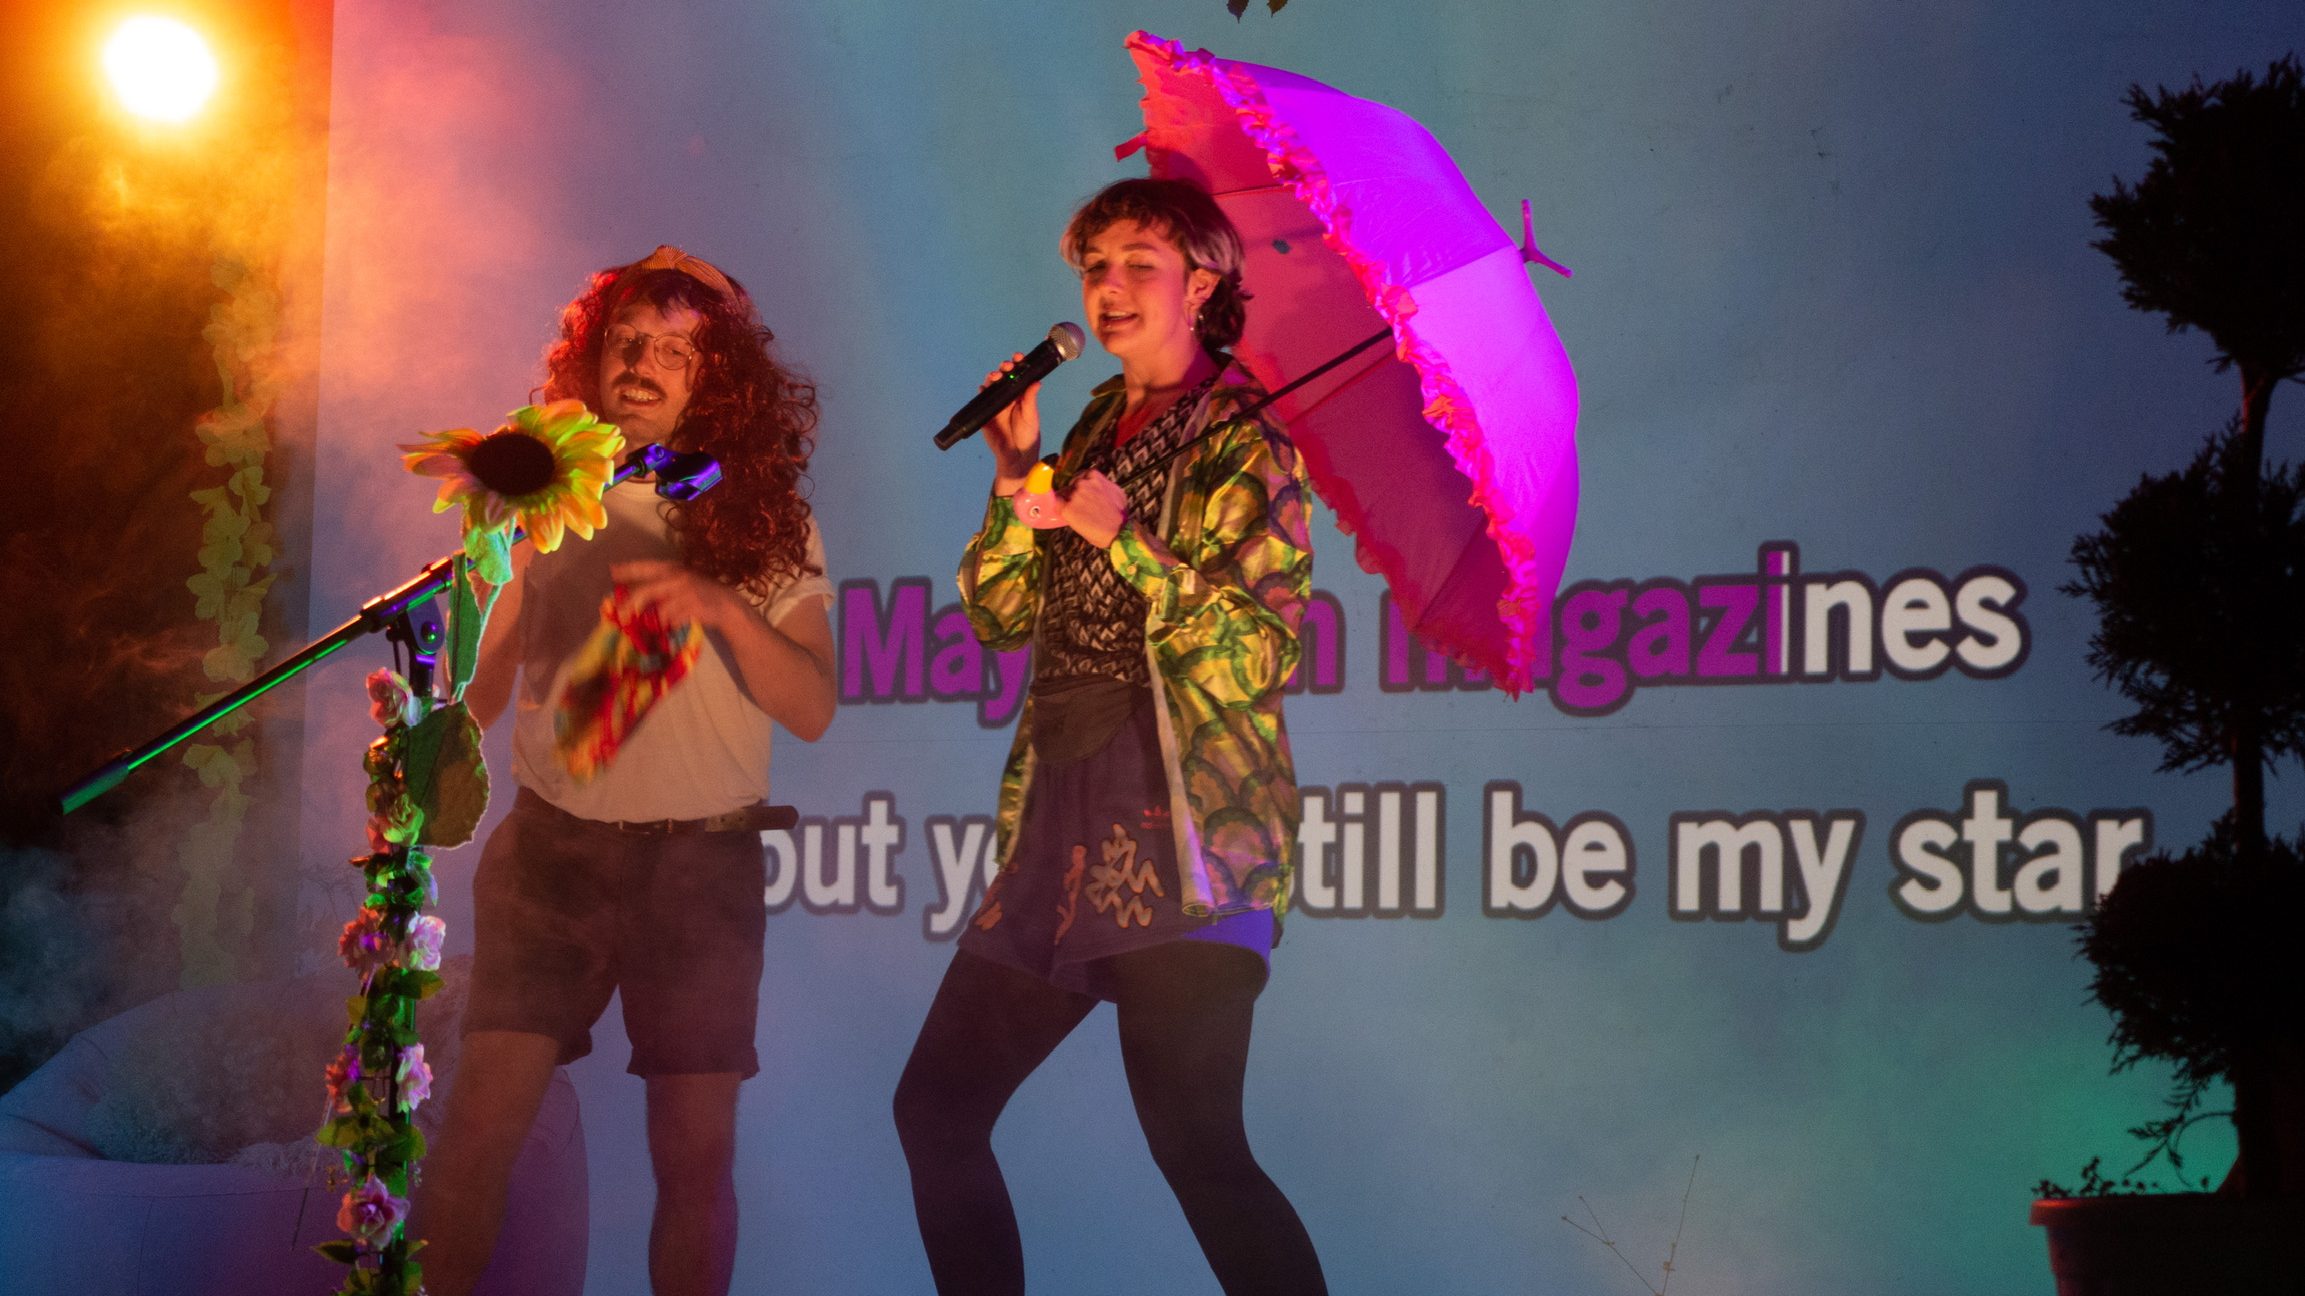 Zwei verkleidete Menschen auf der Bühne beim Karaokesingen